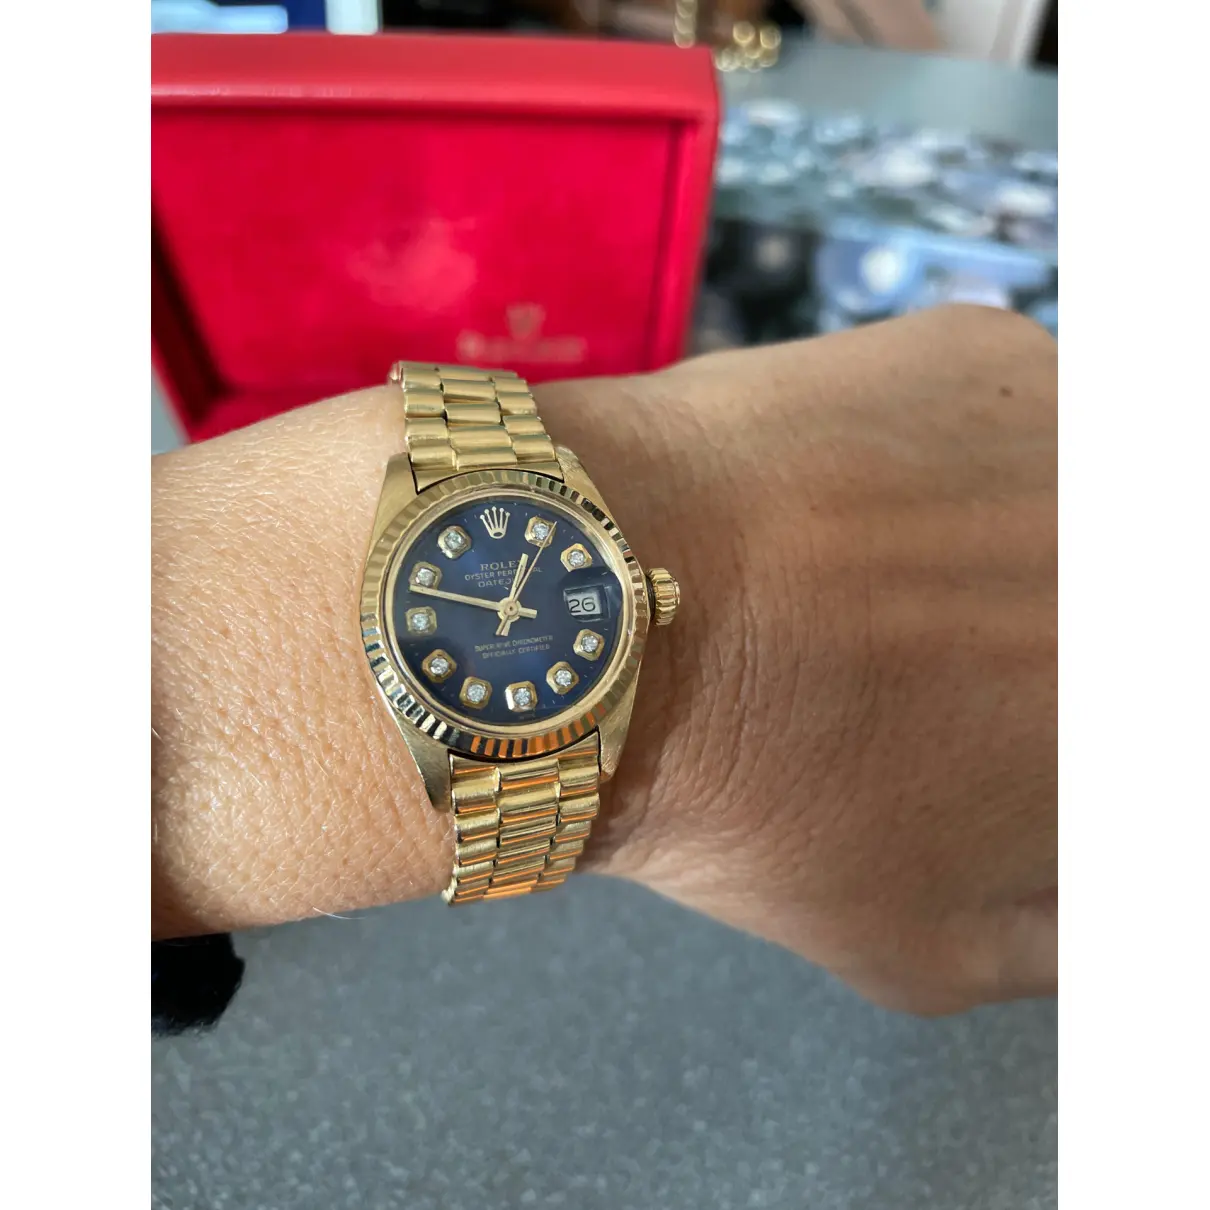 Datejust yellow gold watch Rolex - Vintage